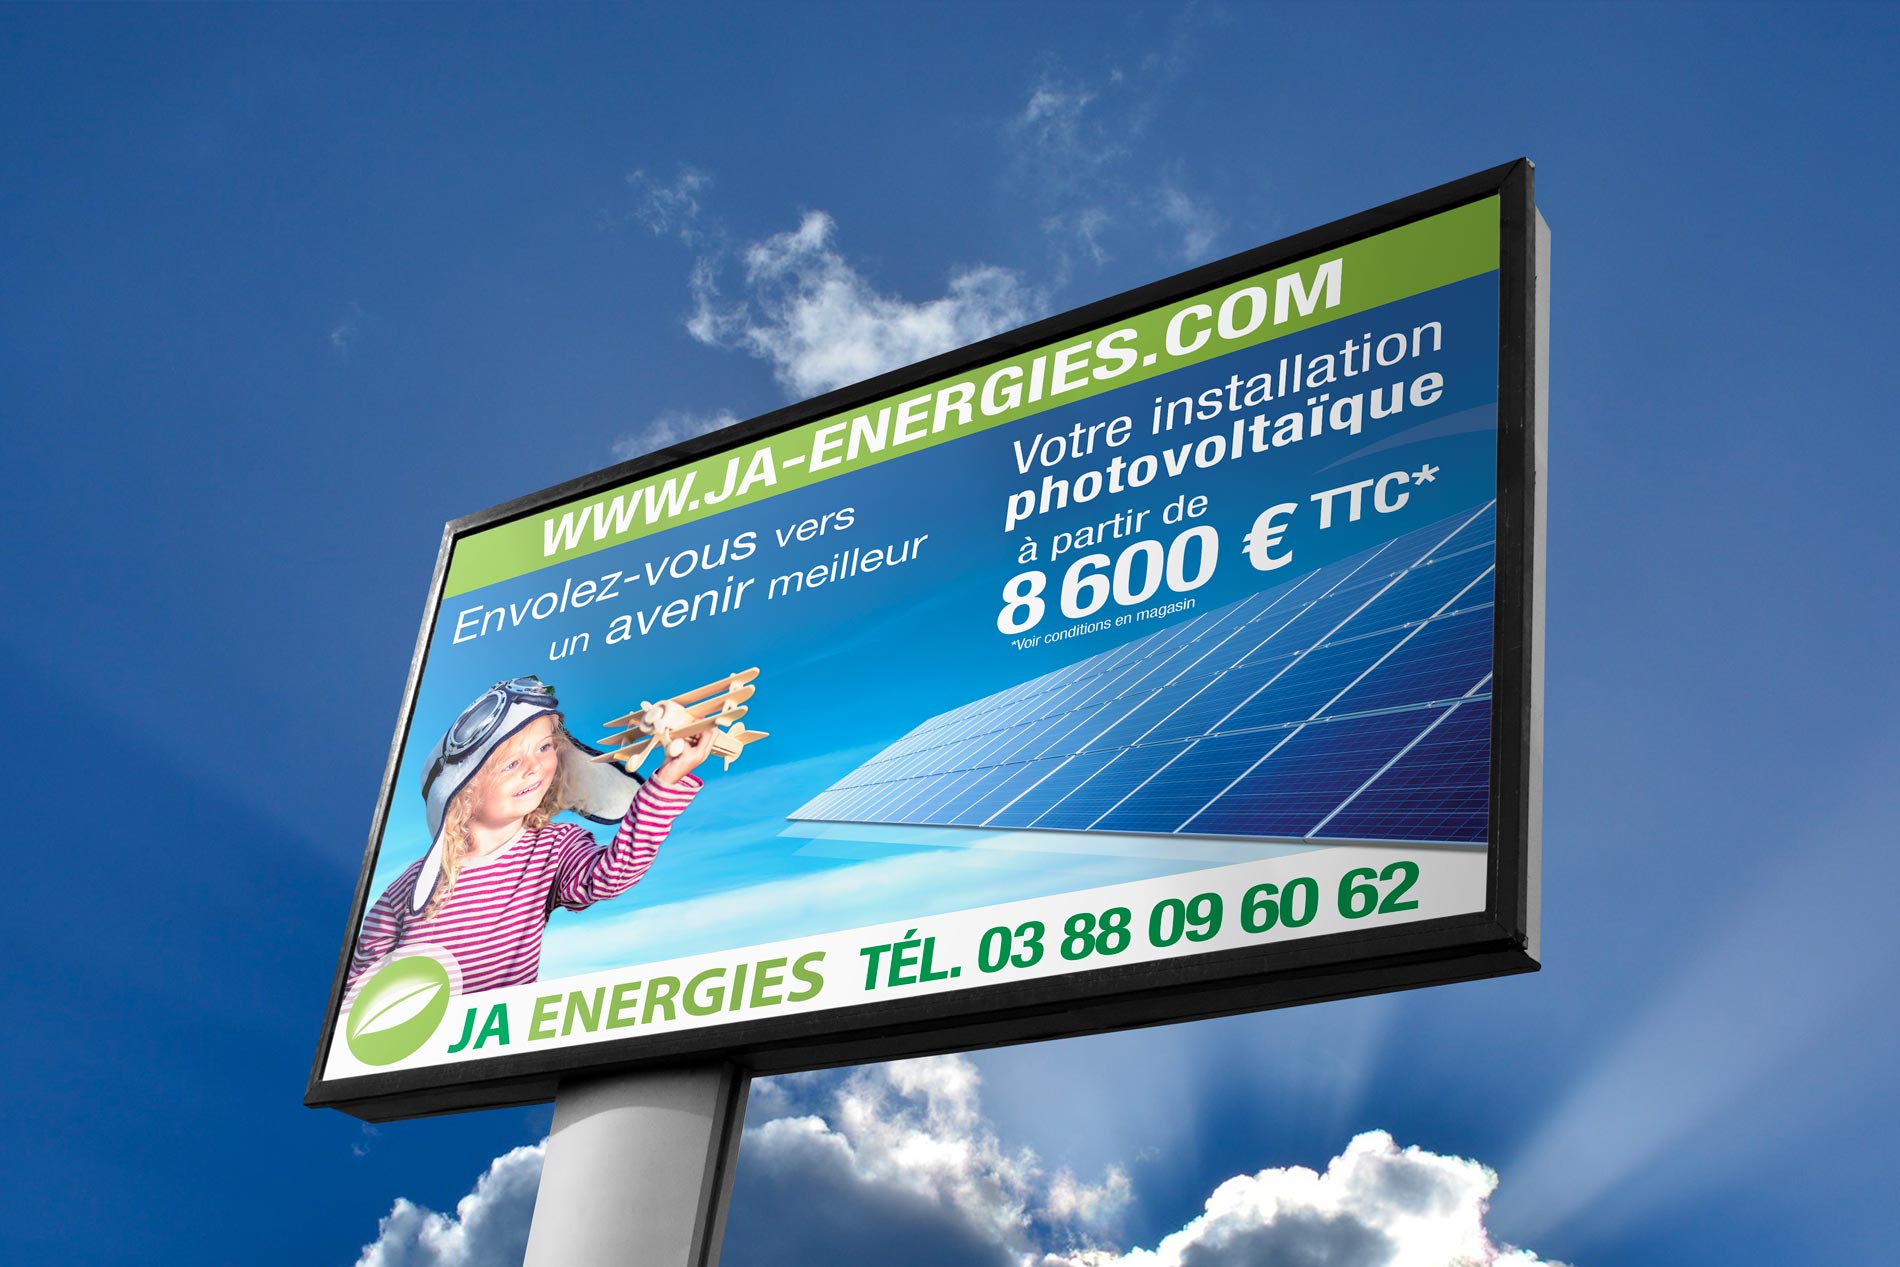 Pancarte, signaletique, solution économie énergie